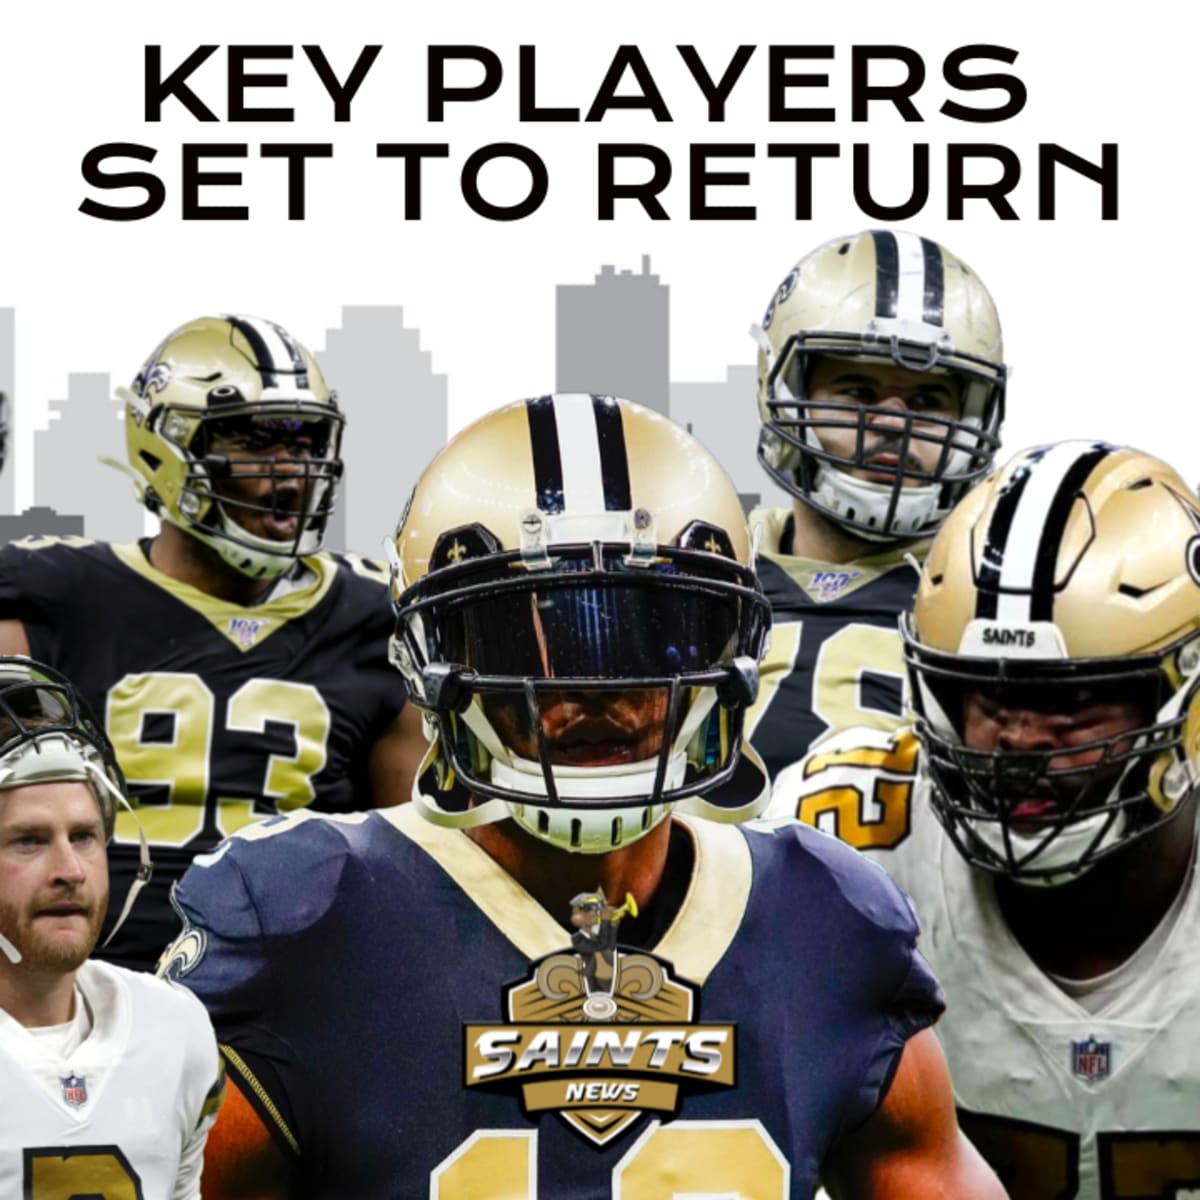 Saints Key Players: Saints đã thiết lập một đội hình mạnh mẽ và không thể thiếu được những cầu thủ quan trọng của họ. Bức ảnh này sẽ giới thiệu cho bạn những ngôi sao với sức mạnh và khả năng cao nhất của đội.